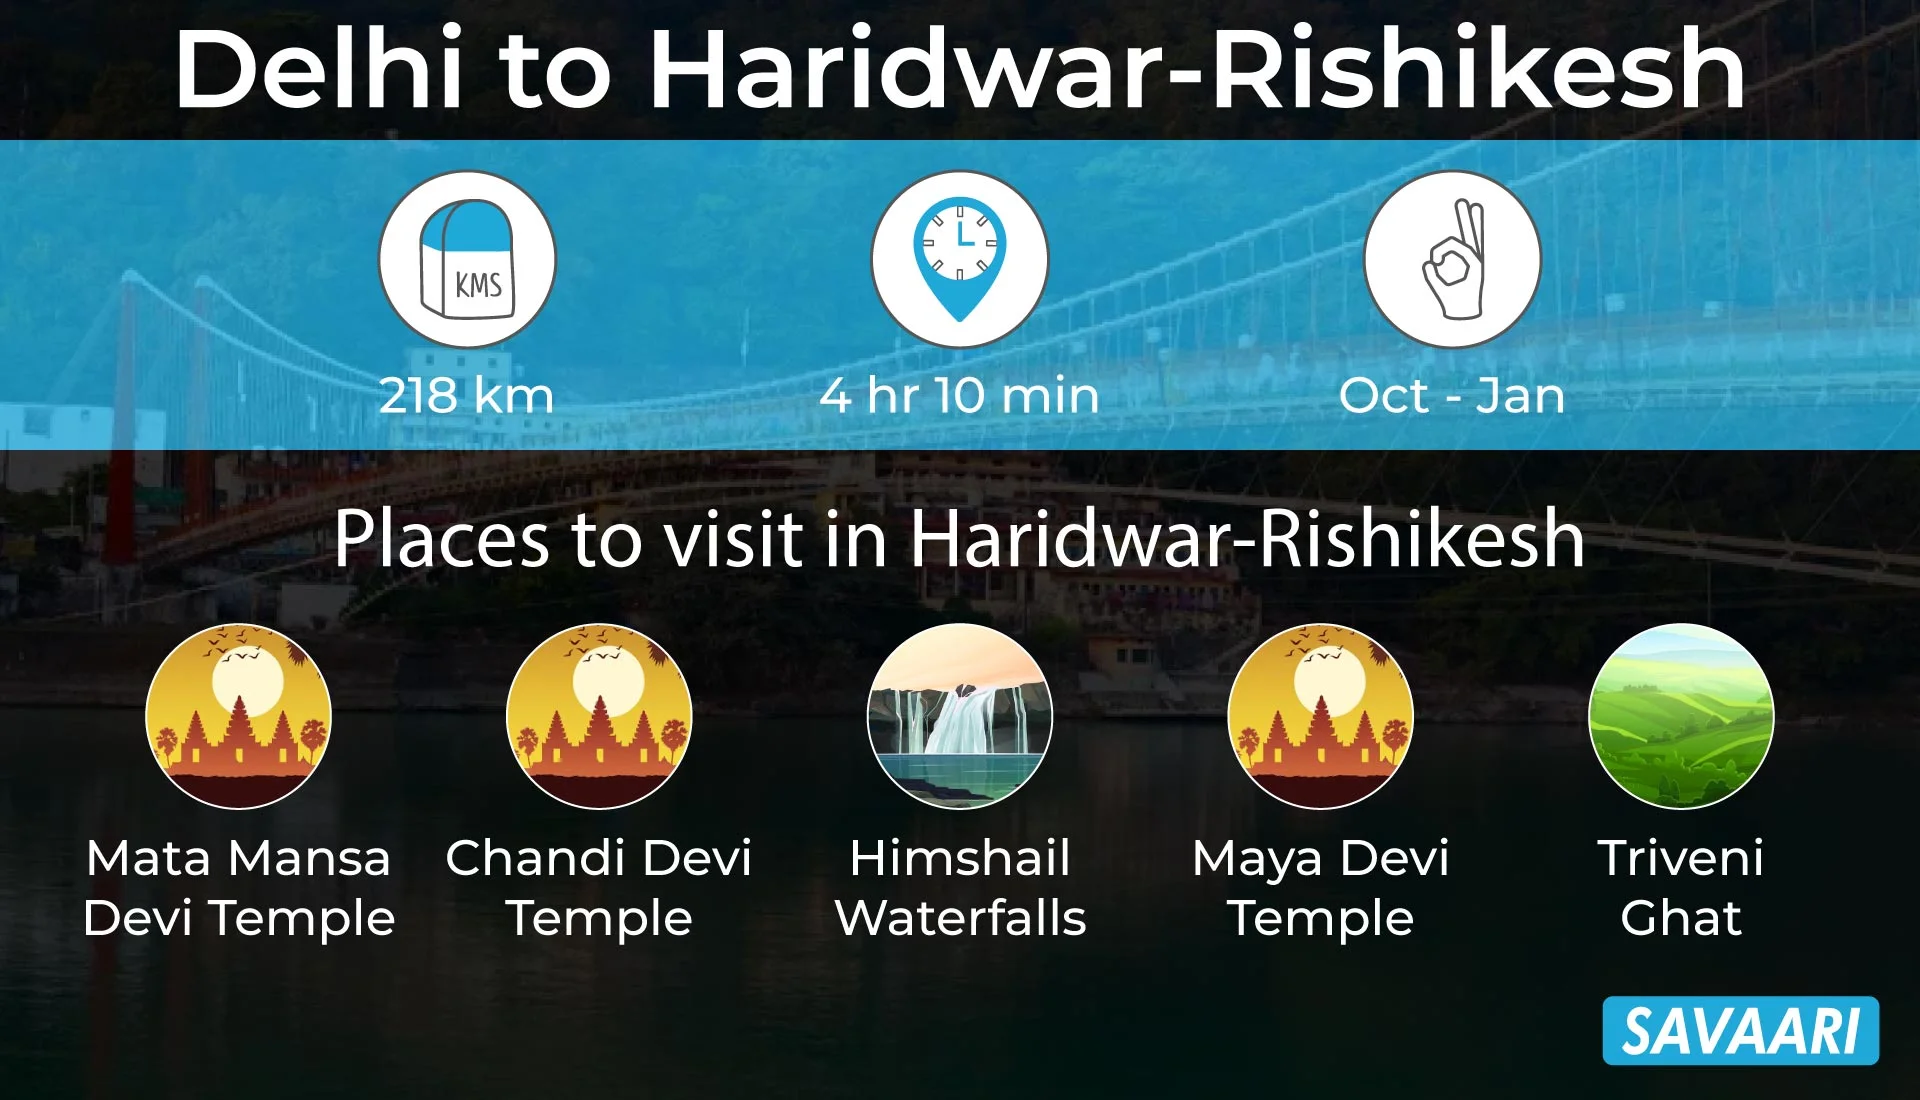 Haridwar- Rishikesh a spiritual getaway